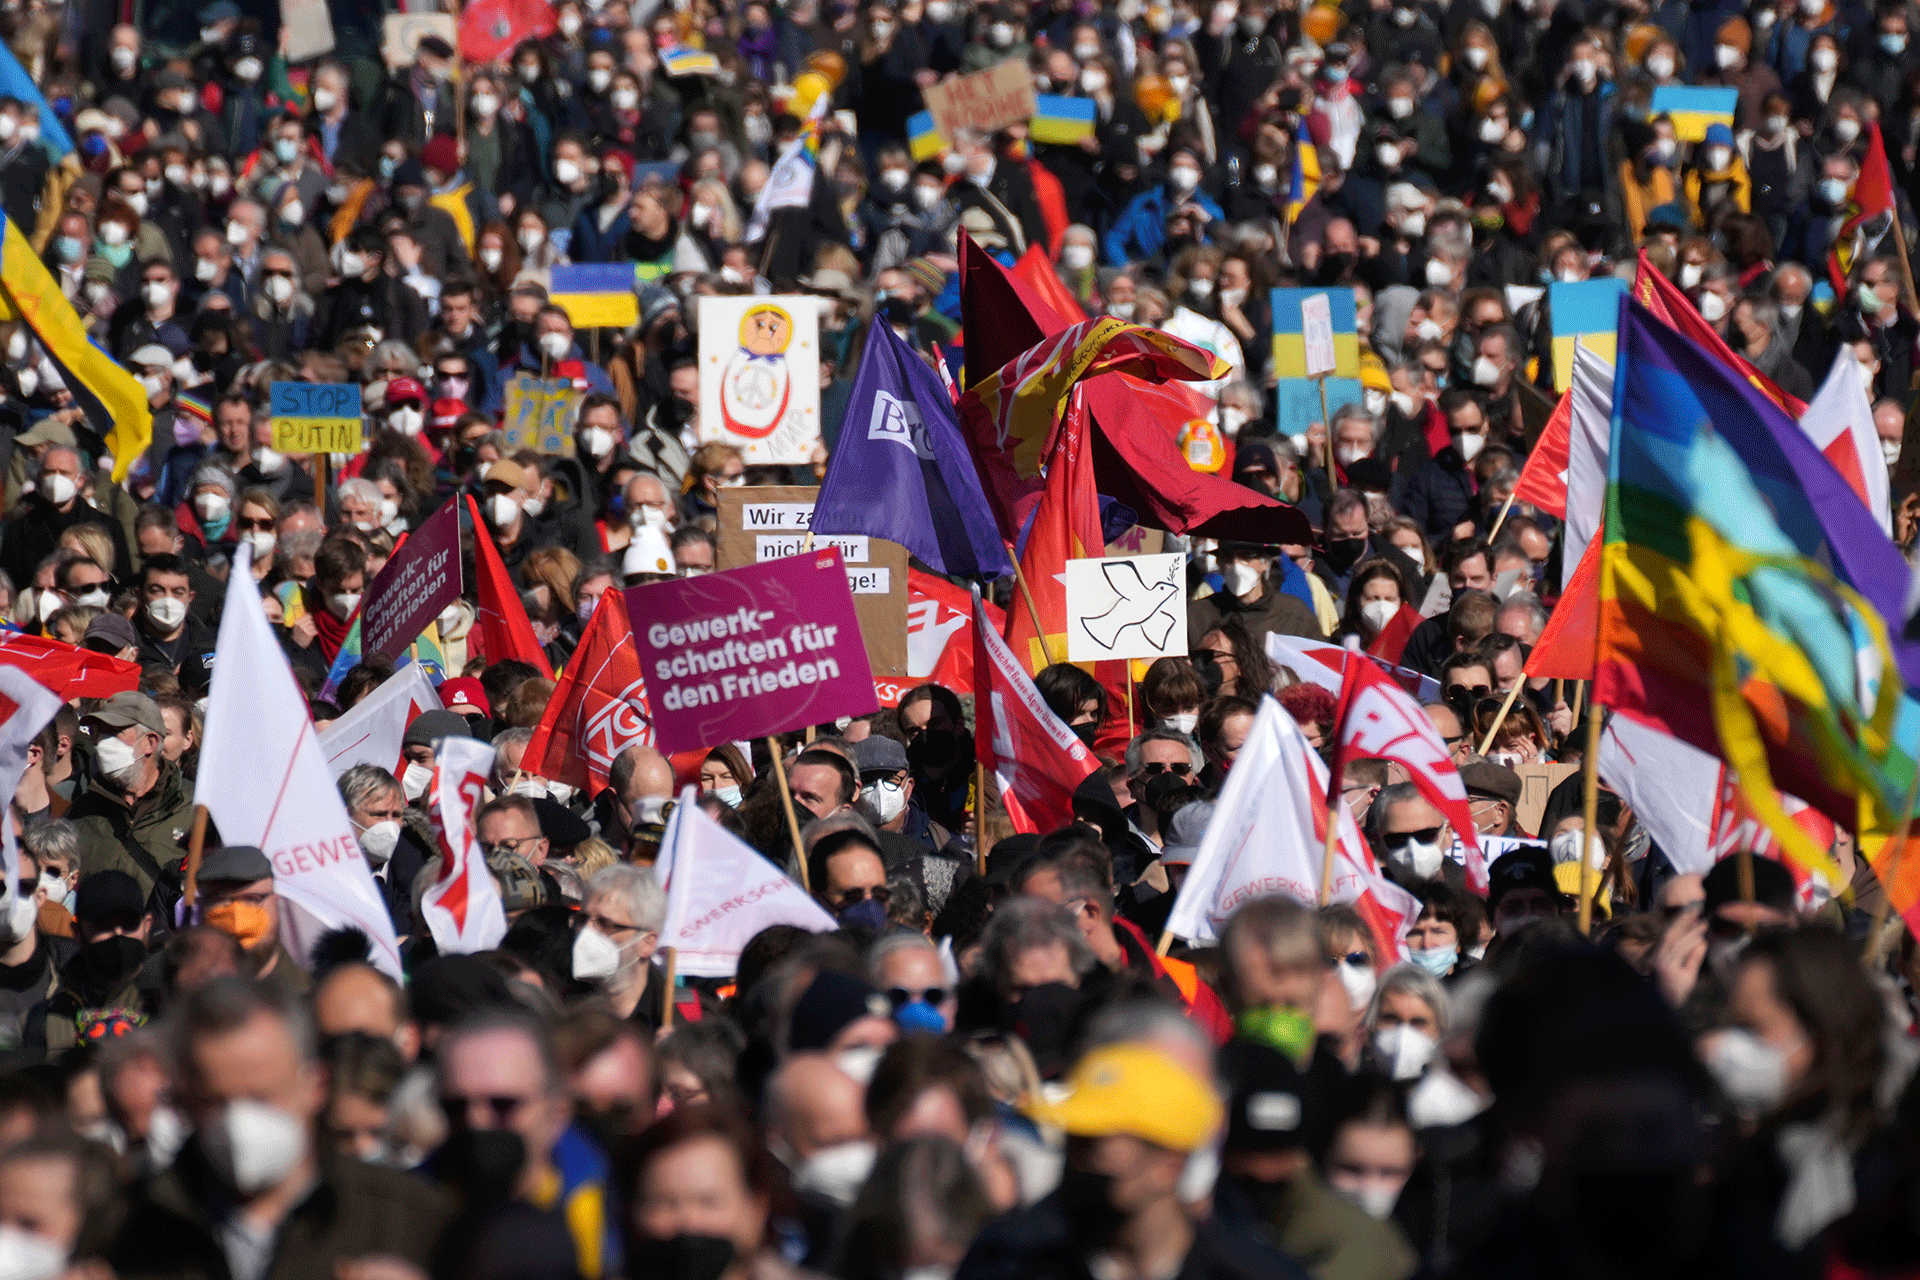 Paredzēti pretkara protesti visā Eiropā, nelieli mītiņi Krievijā